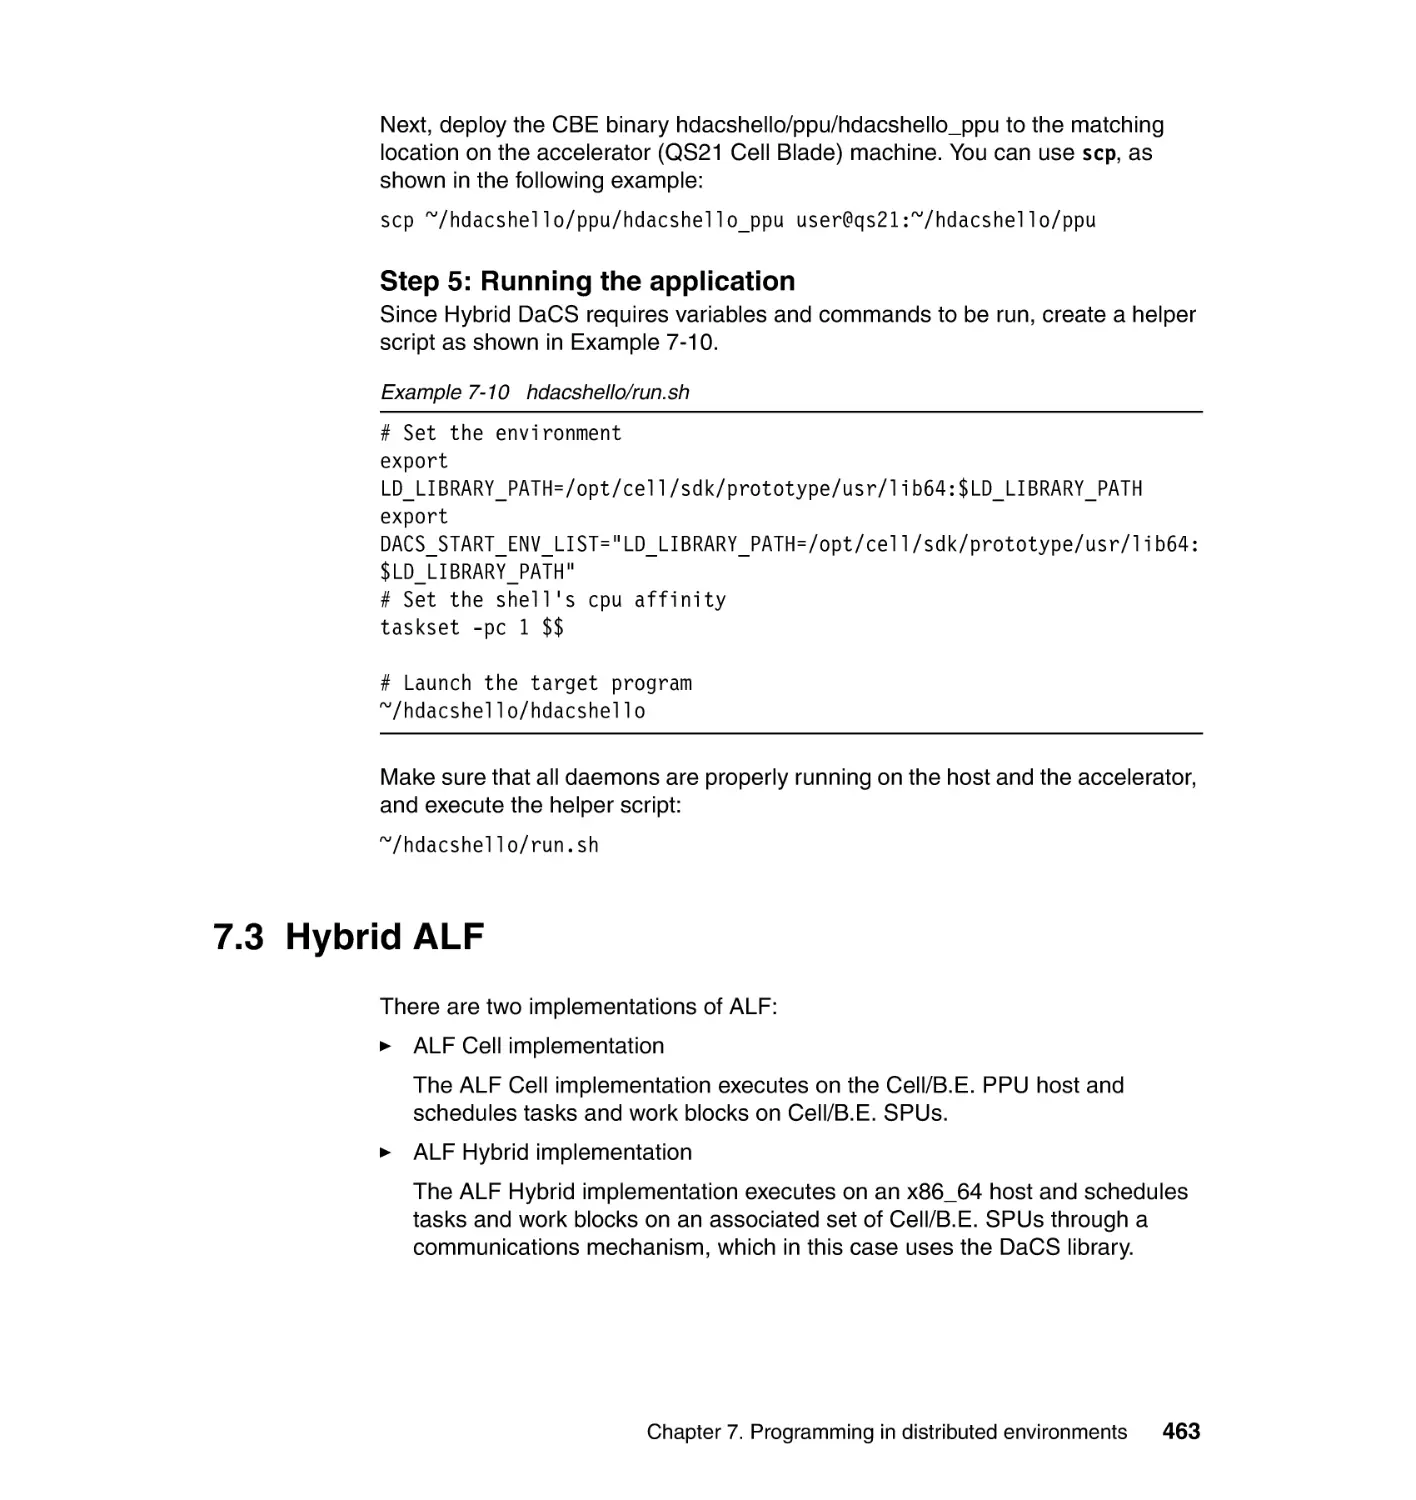 7.3 Hybrid ALF